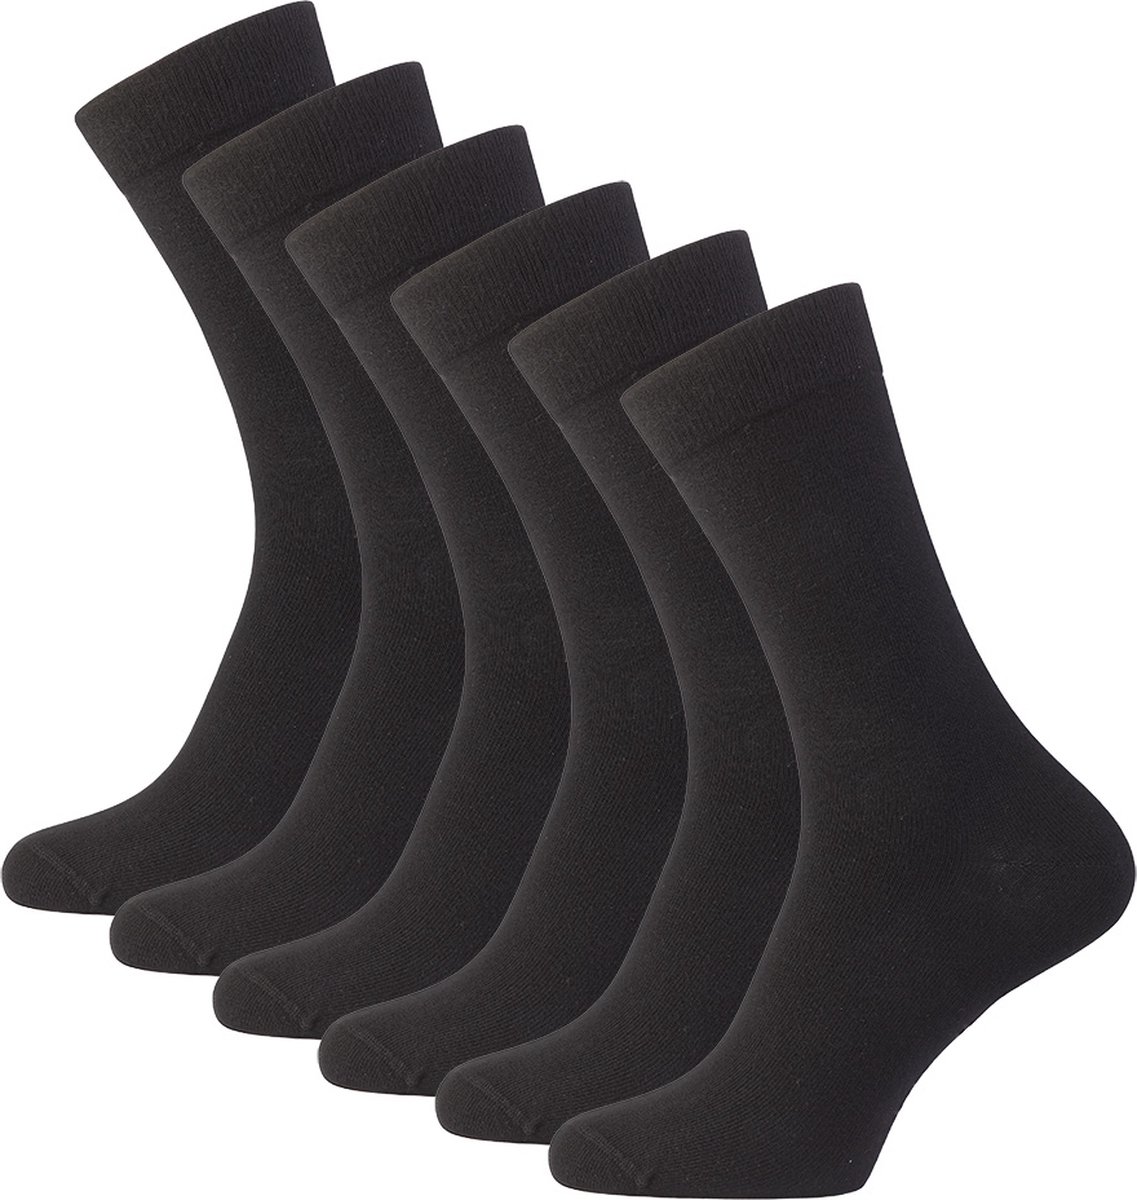 Sokjes.nl® Hoge sokken - 6 Paar - Zwart - 43-46 - Naadloos - Comfort